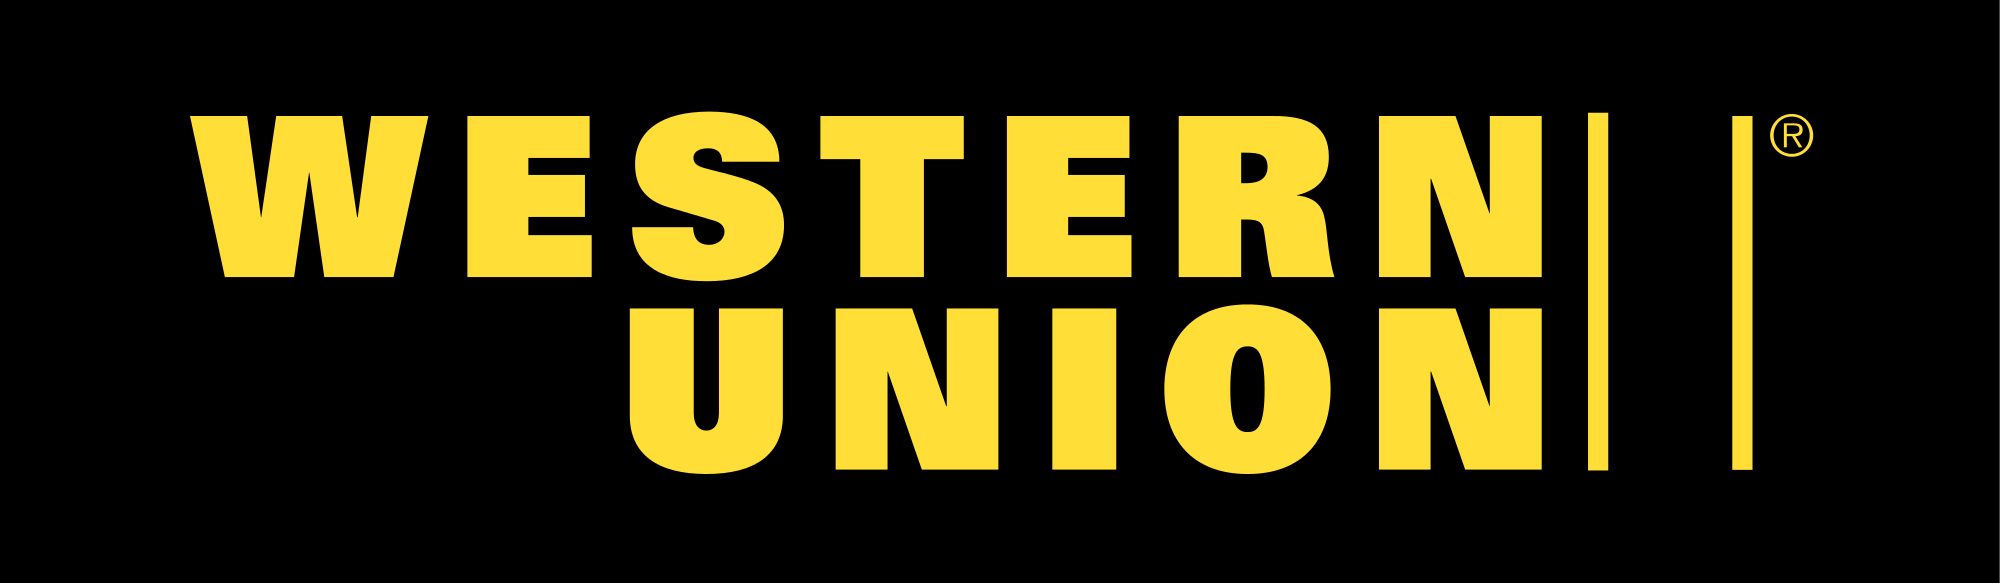 Western Union Logo Vector - W